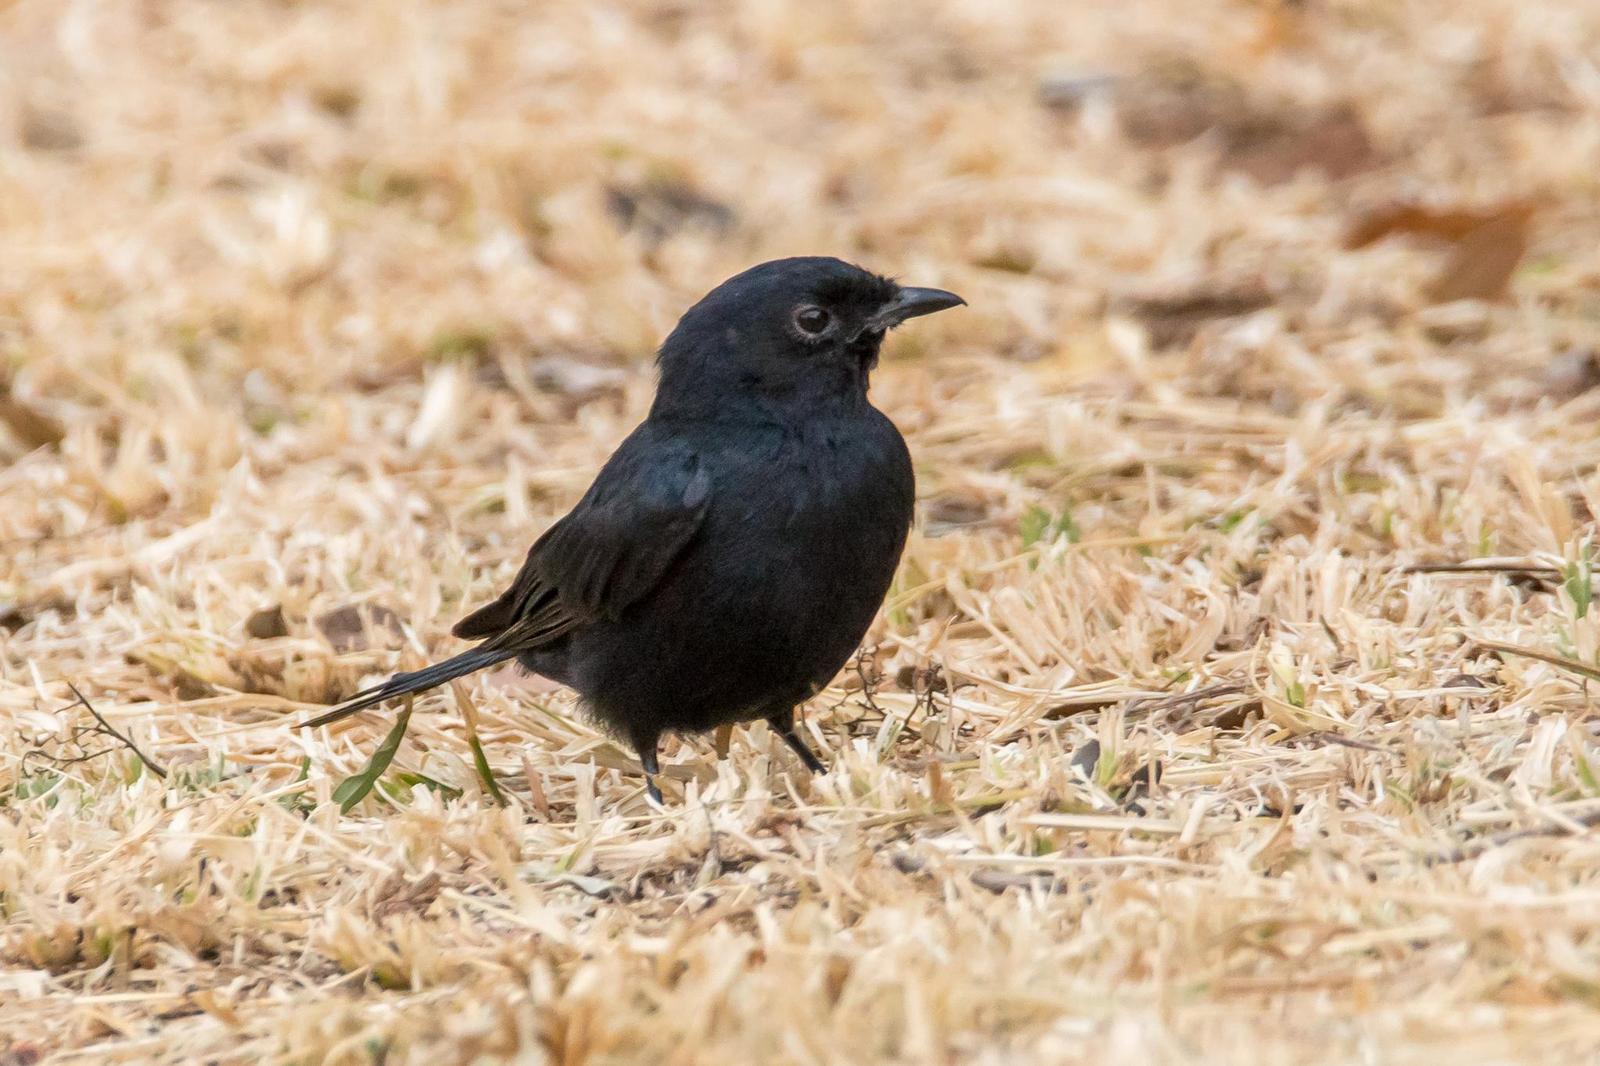 Southern Black-Flycatcher Photo by Gerald Hoekstra